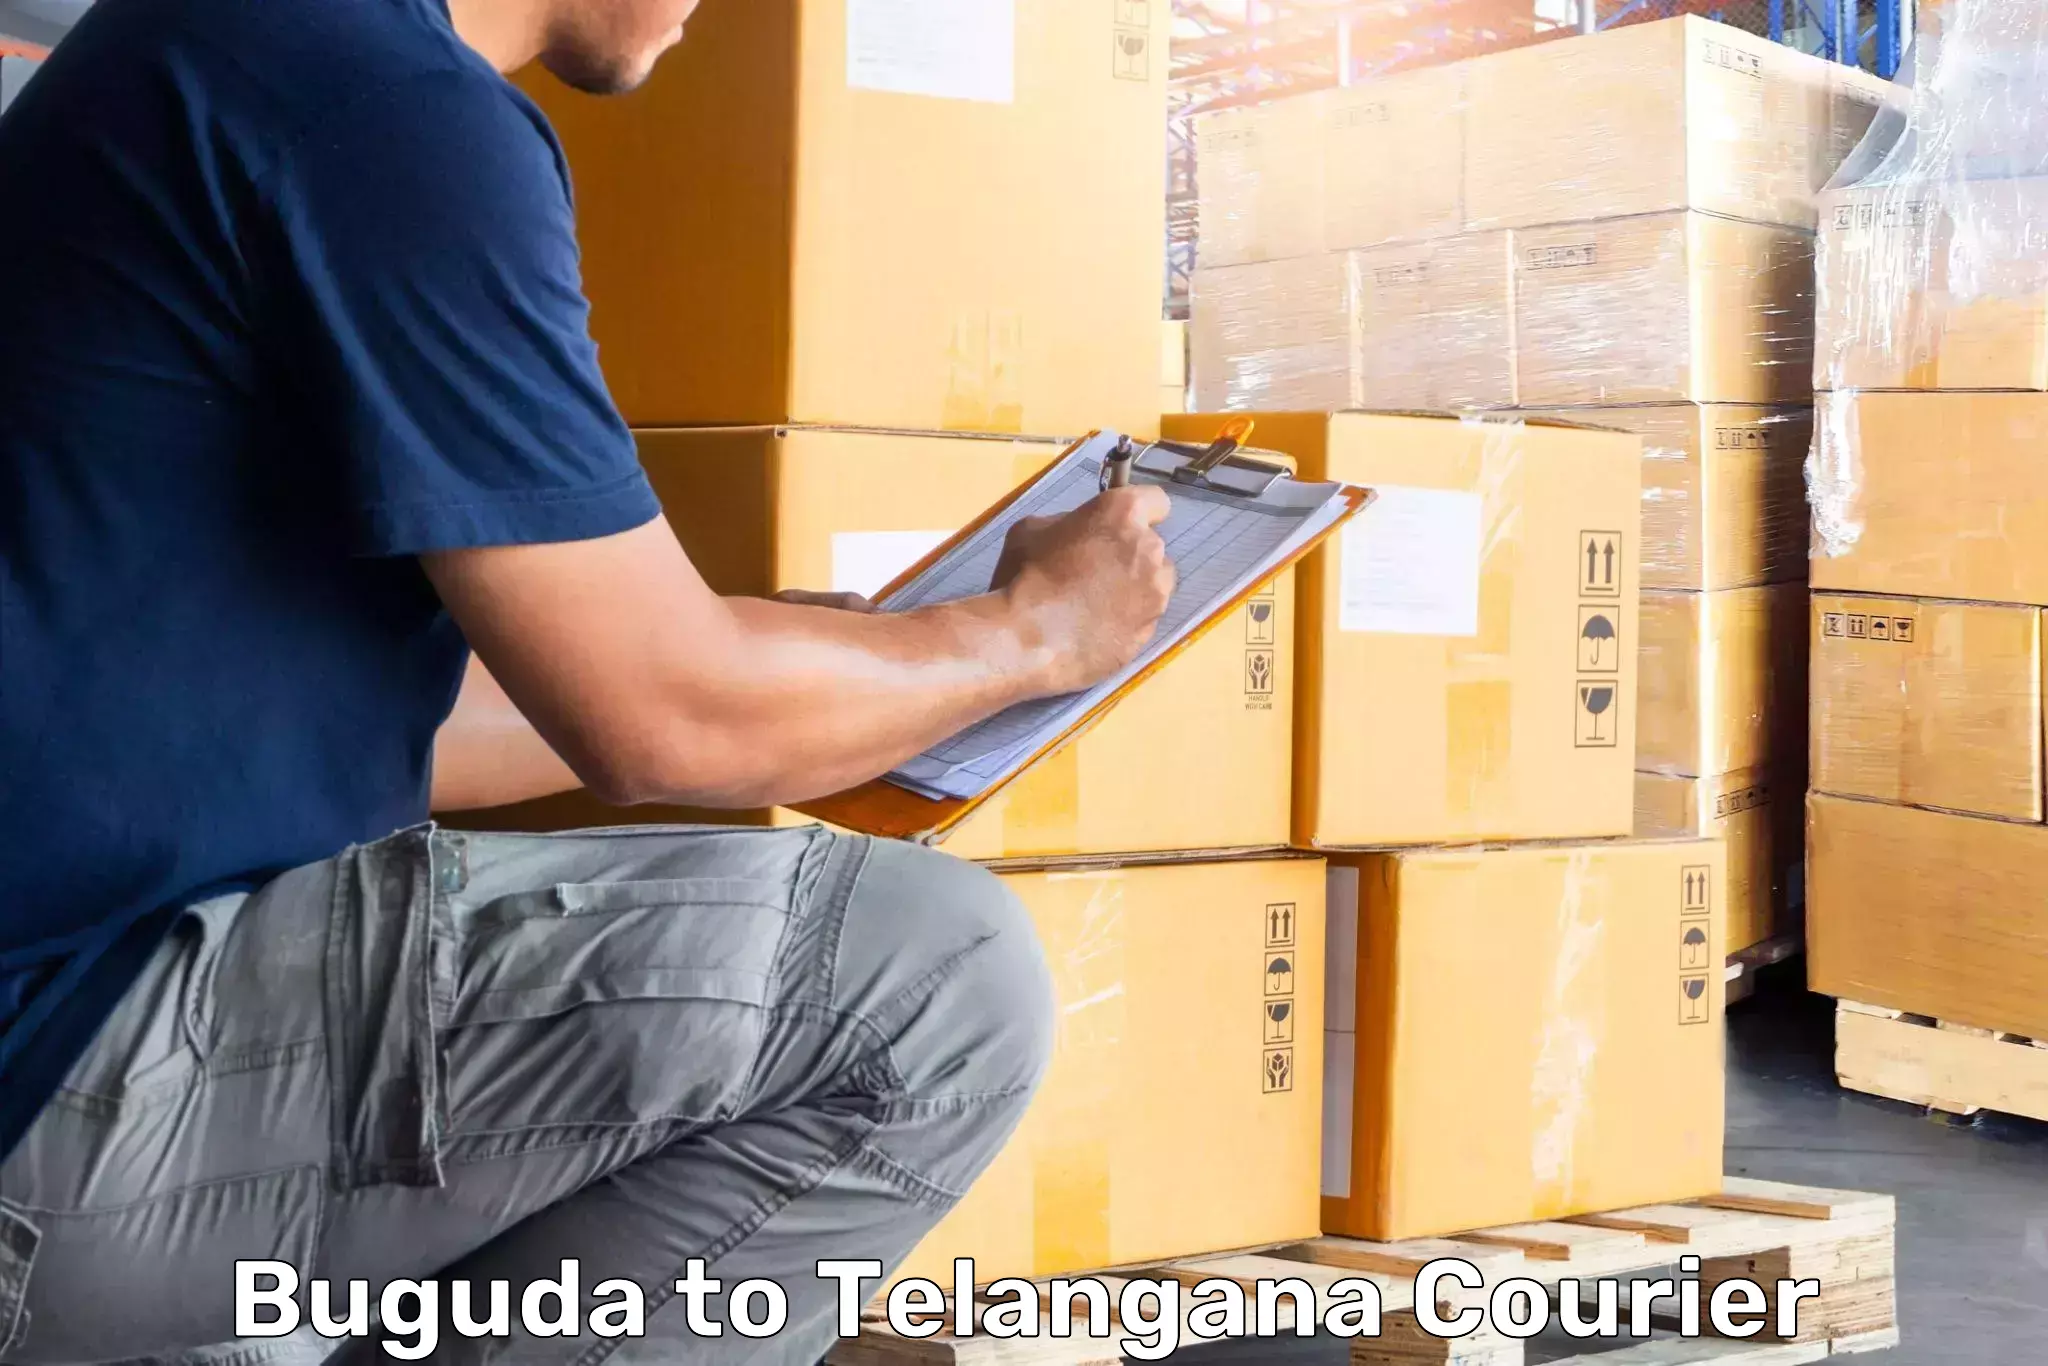 Luggage delivery optimization in Buguda to Chevella